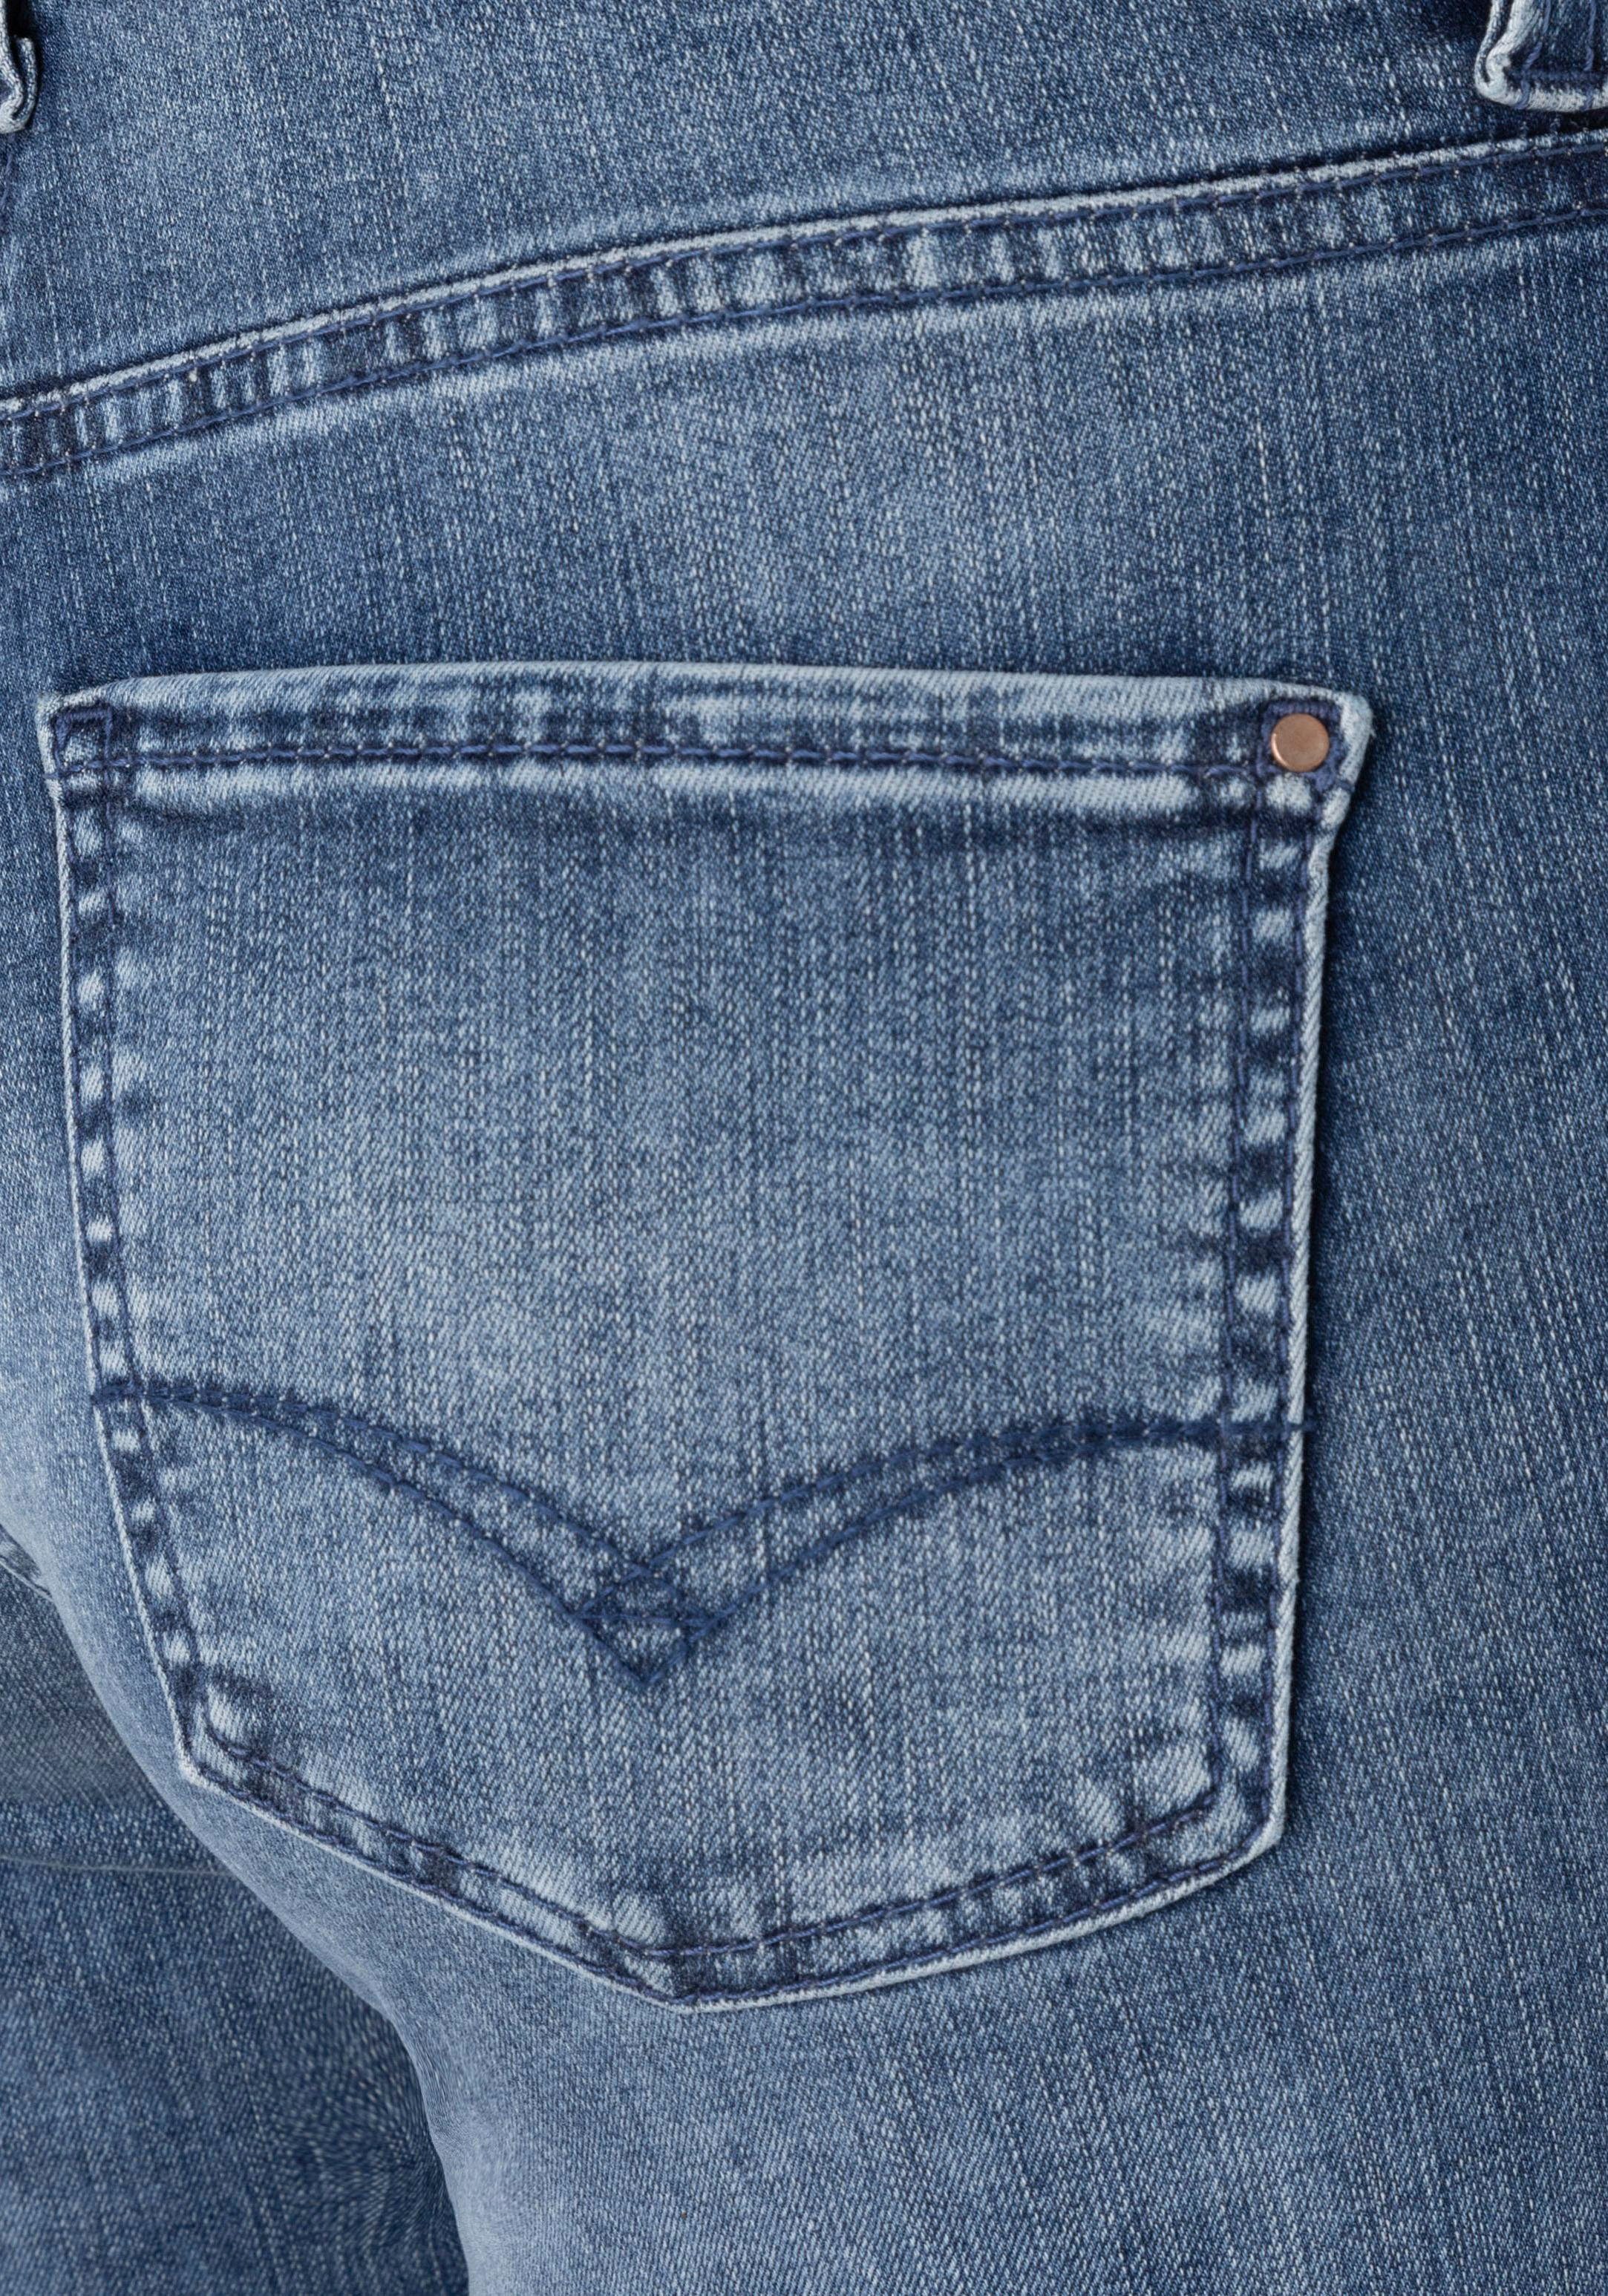 3/4-Jeans blue modisch verkürzt dark leicht washed ausgestellt Saum und Dream Kick MAC